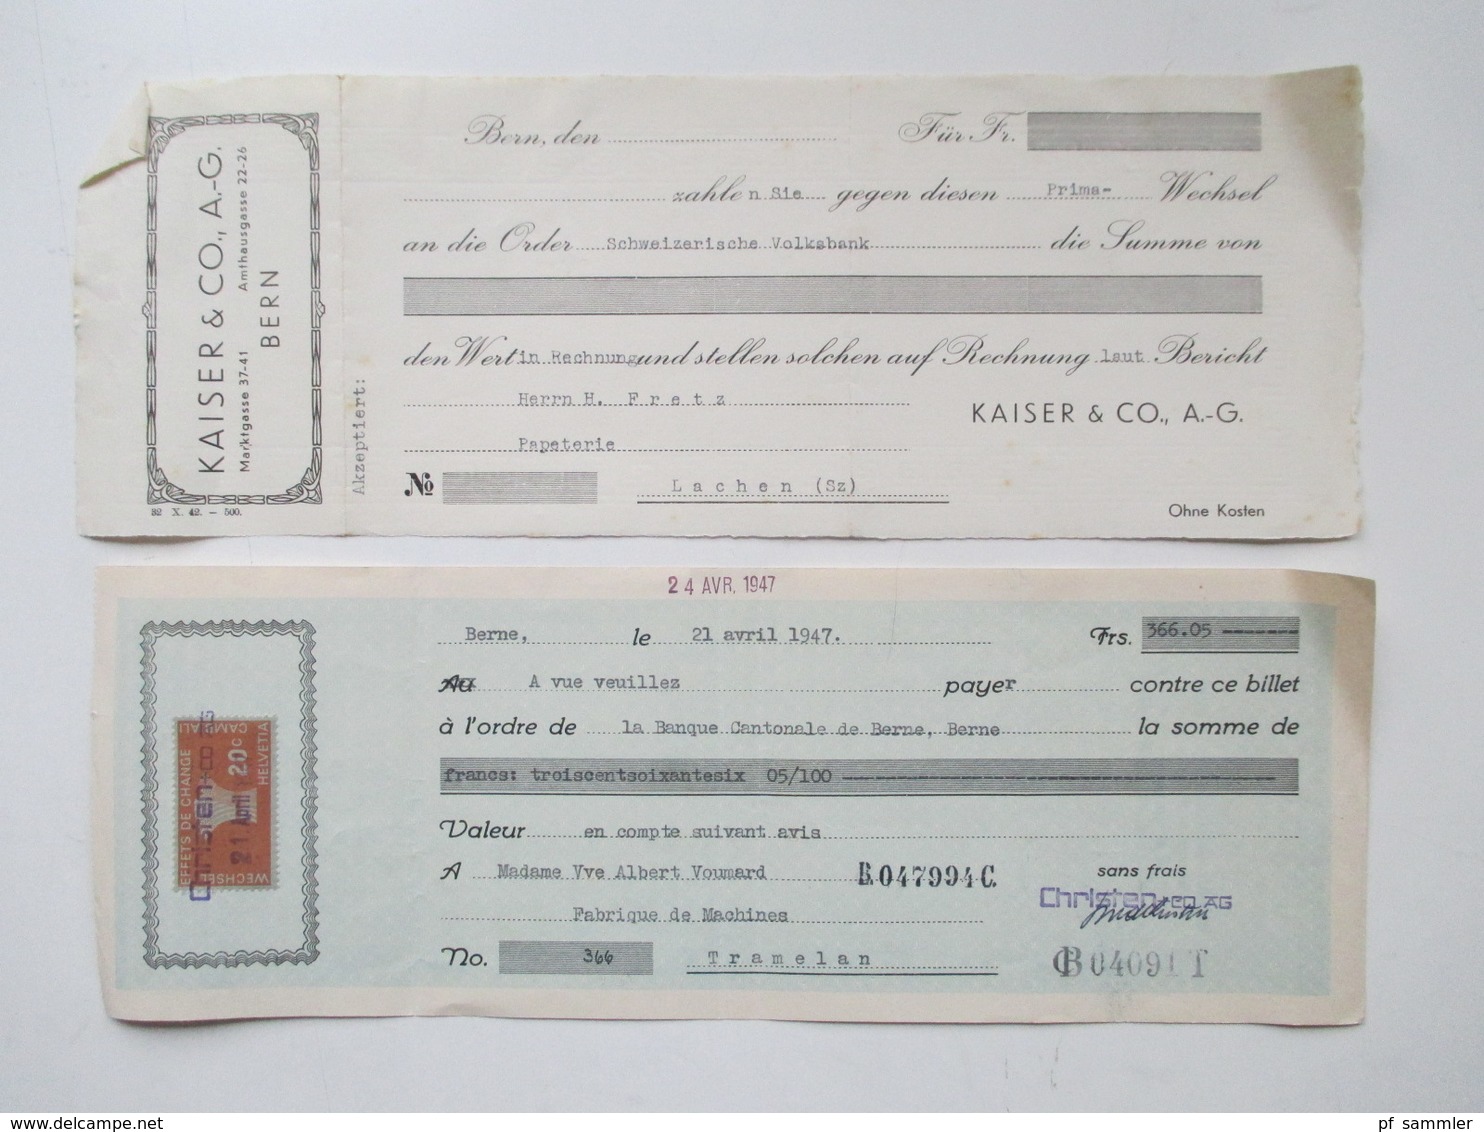 Schweiz 1900 - 1966 Wechsel / Dokumente Viele Mit Stempelmarken / Fiskalmarken. Insgesamt Ca. 100 Stück! Revenues - Revenue Stamps